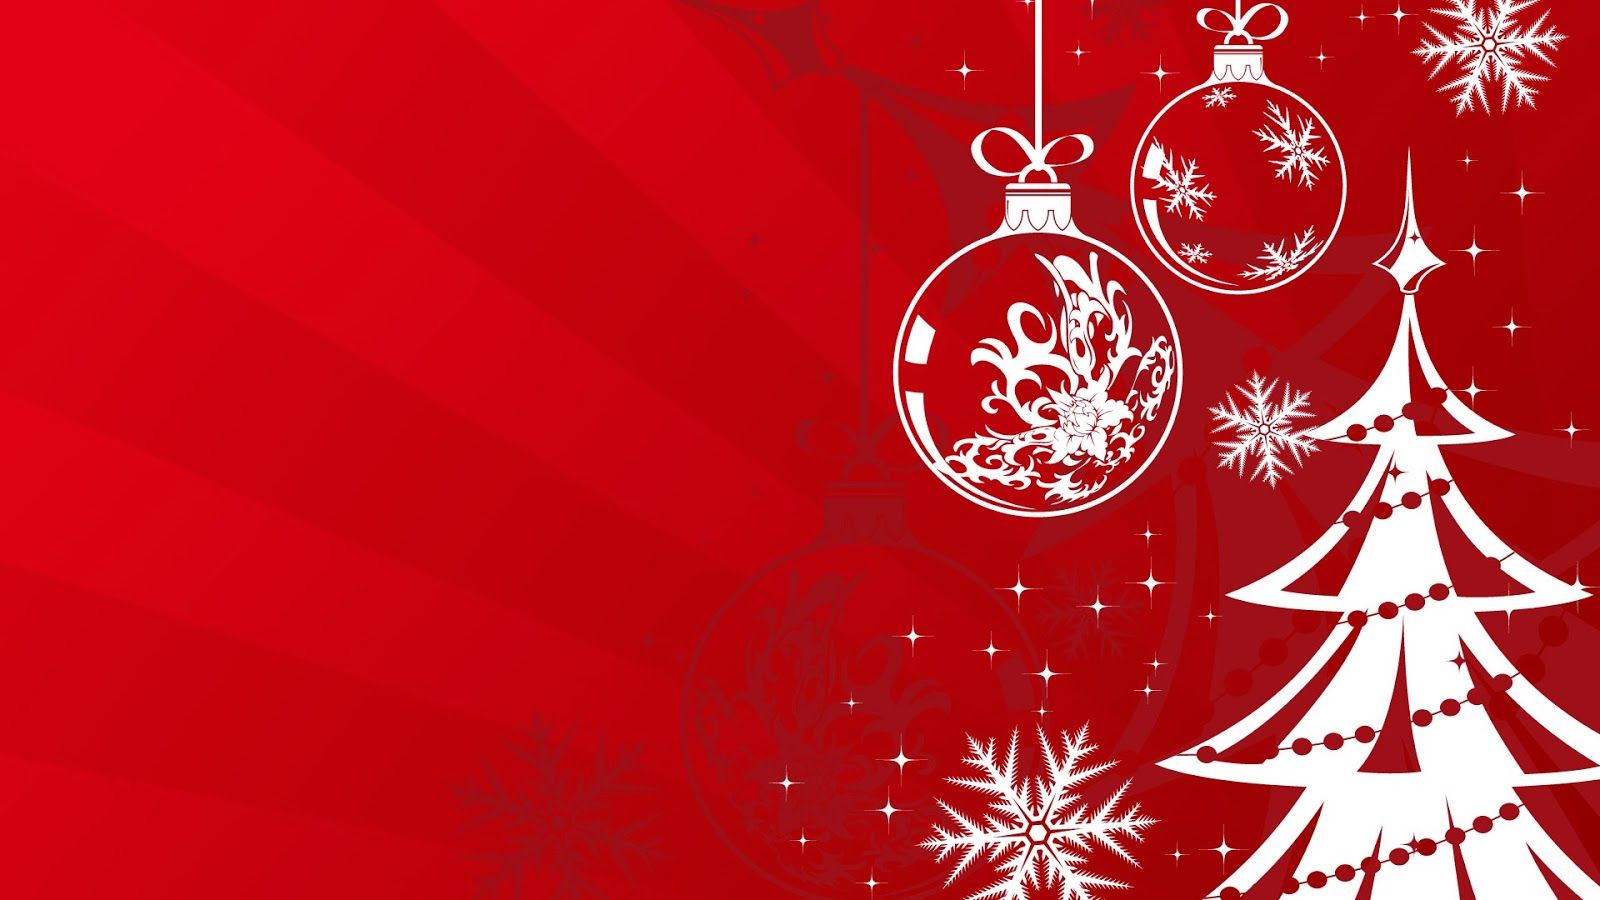 Disfruta de las mejores imágenes del mundo y gratis: Wallpaper de Navidad Navidad y árbol navideño con fondo rojo